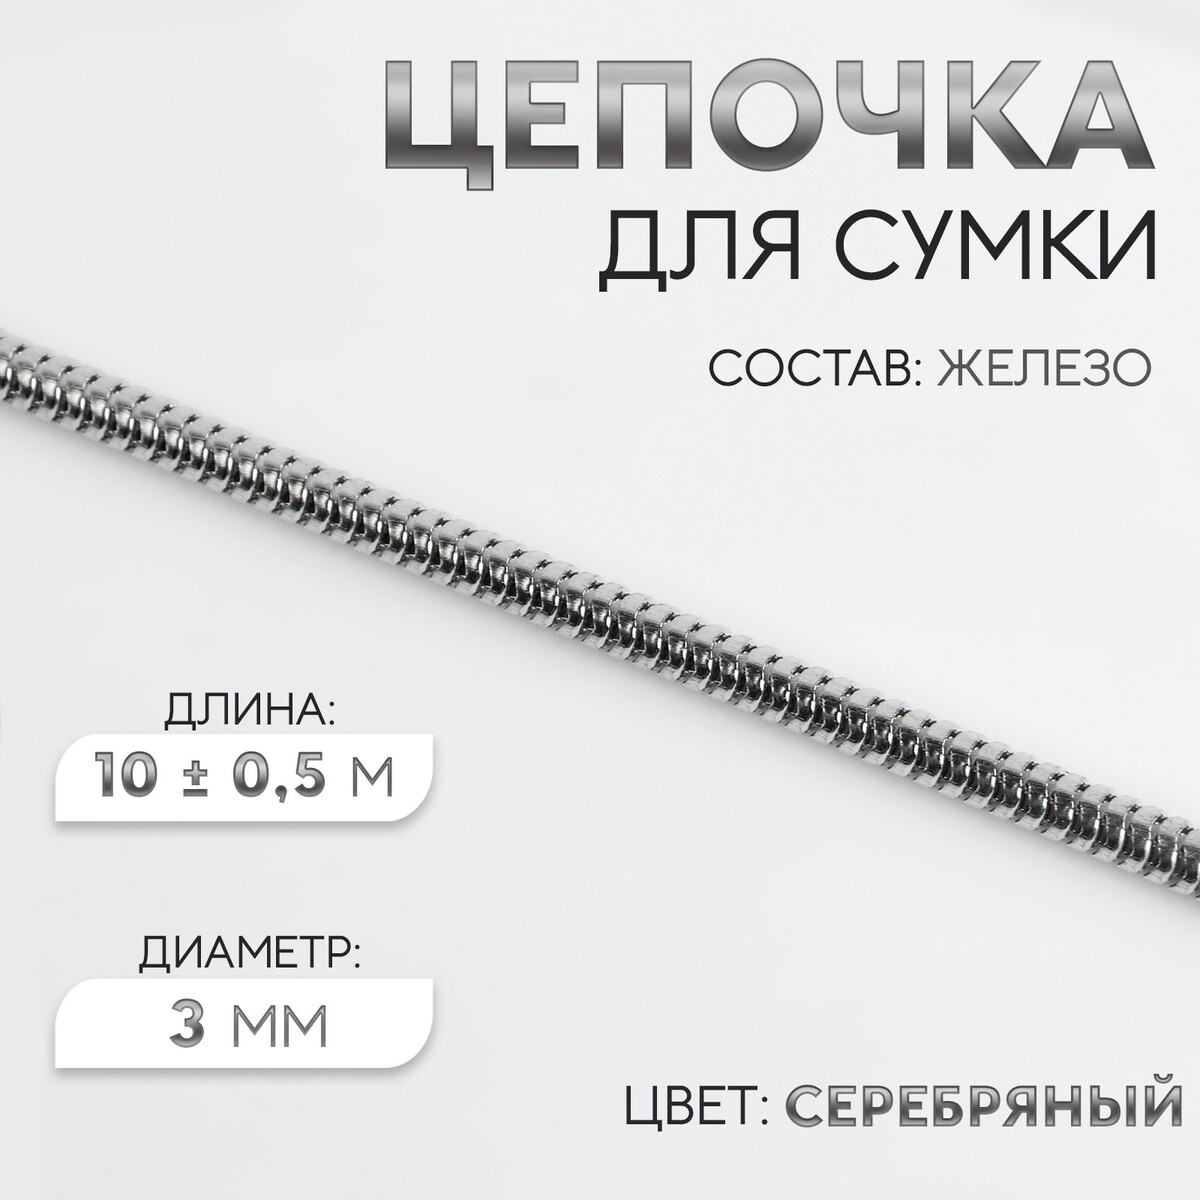 Цепочка для сумки, железная, d = 3 мм, 10 ± 0,5 м, цвет серебряный цепочка для сумки железная 6 2 × 8 8 мм 10 ± 0 5 м серебряный